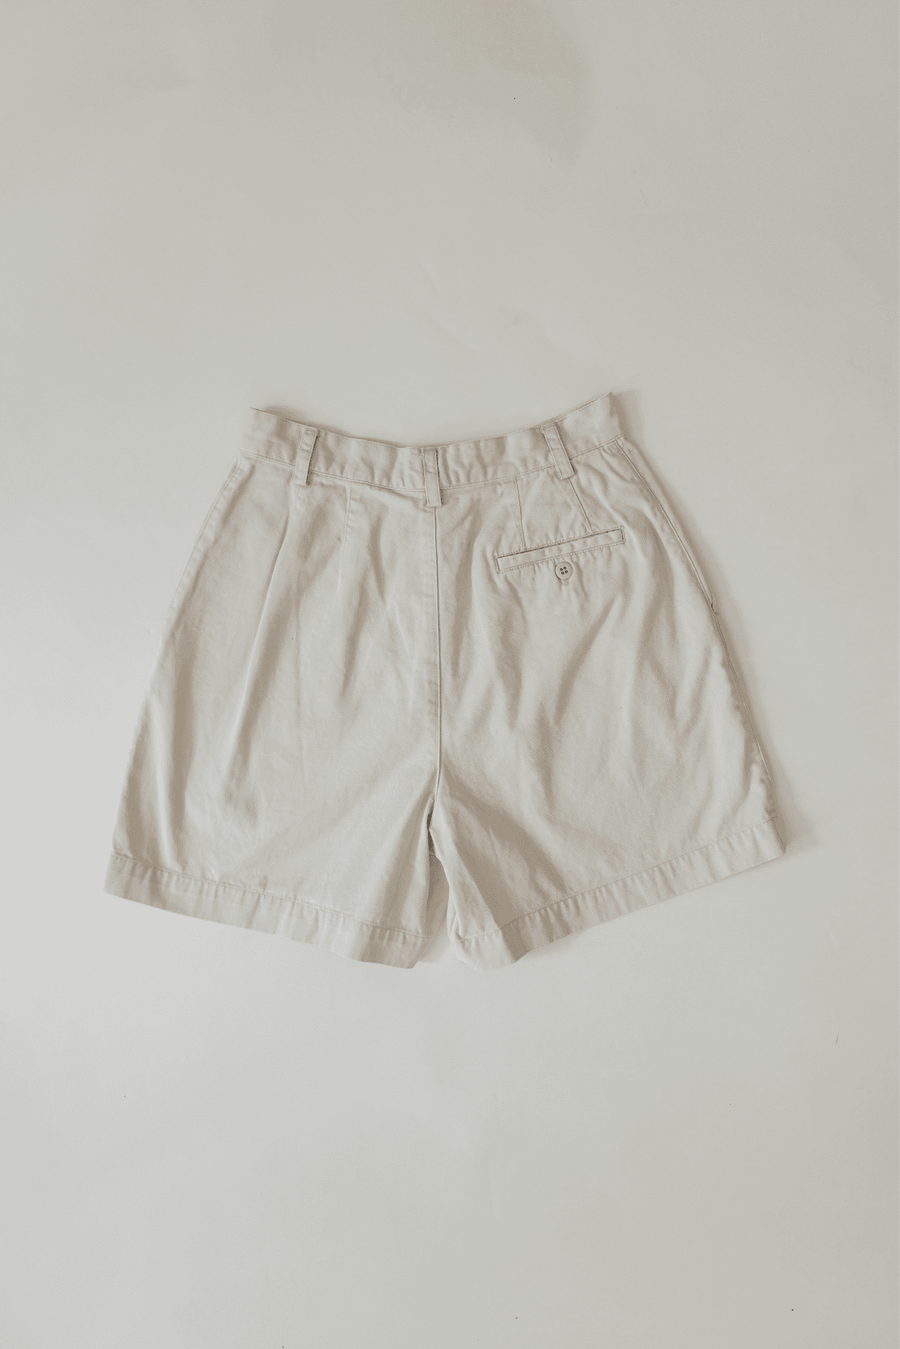 90s Vintage Gap Beige High Waist Shorts Size 8